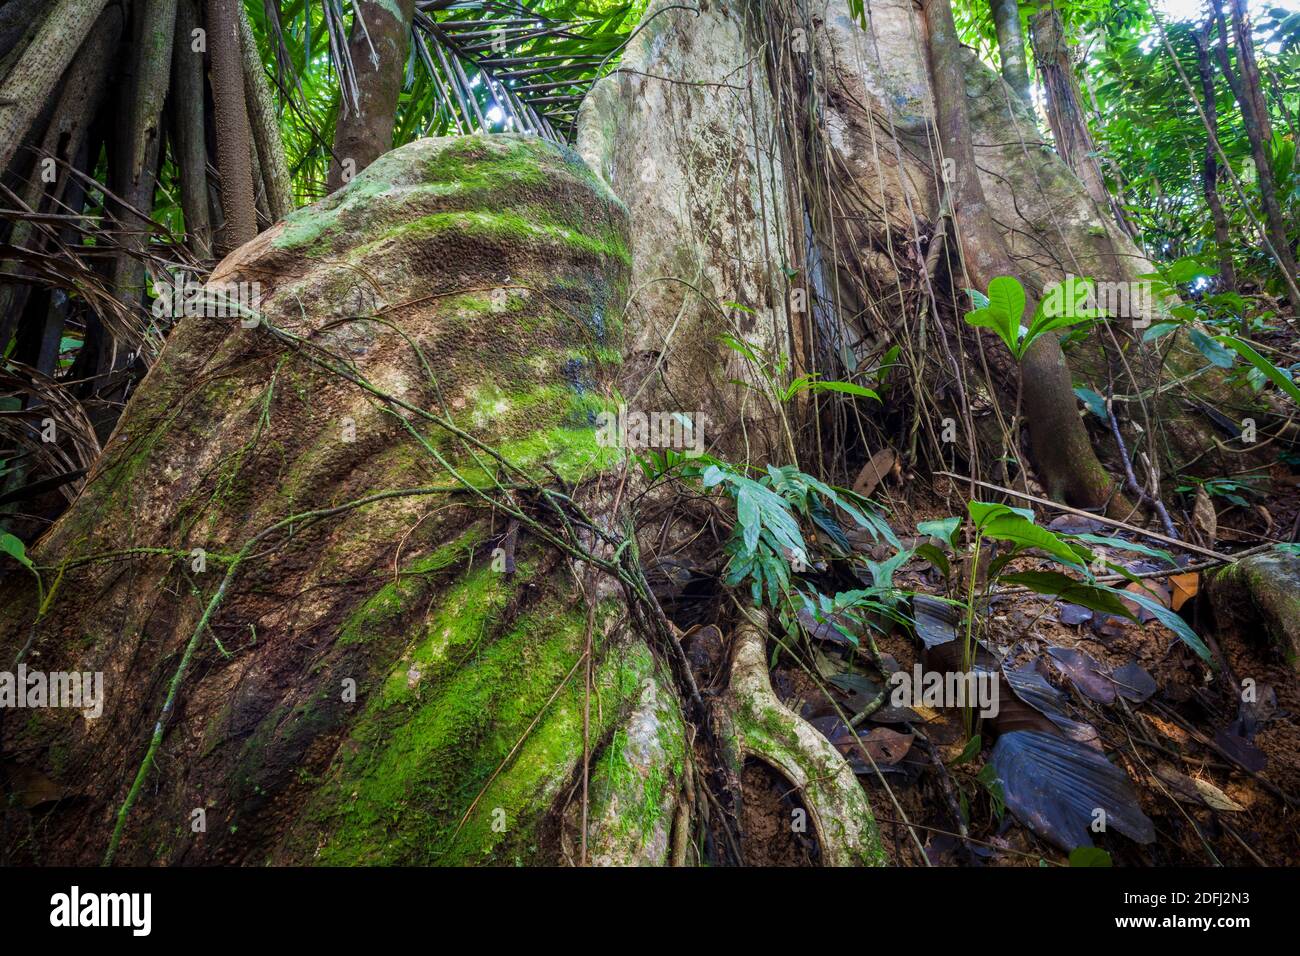 Großer ceiba Baum, Ceiba pentandra, im Regenwald des Burbayar Naturschutzgebietes, Panama Provinz, Republik Panama. Stockfoto